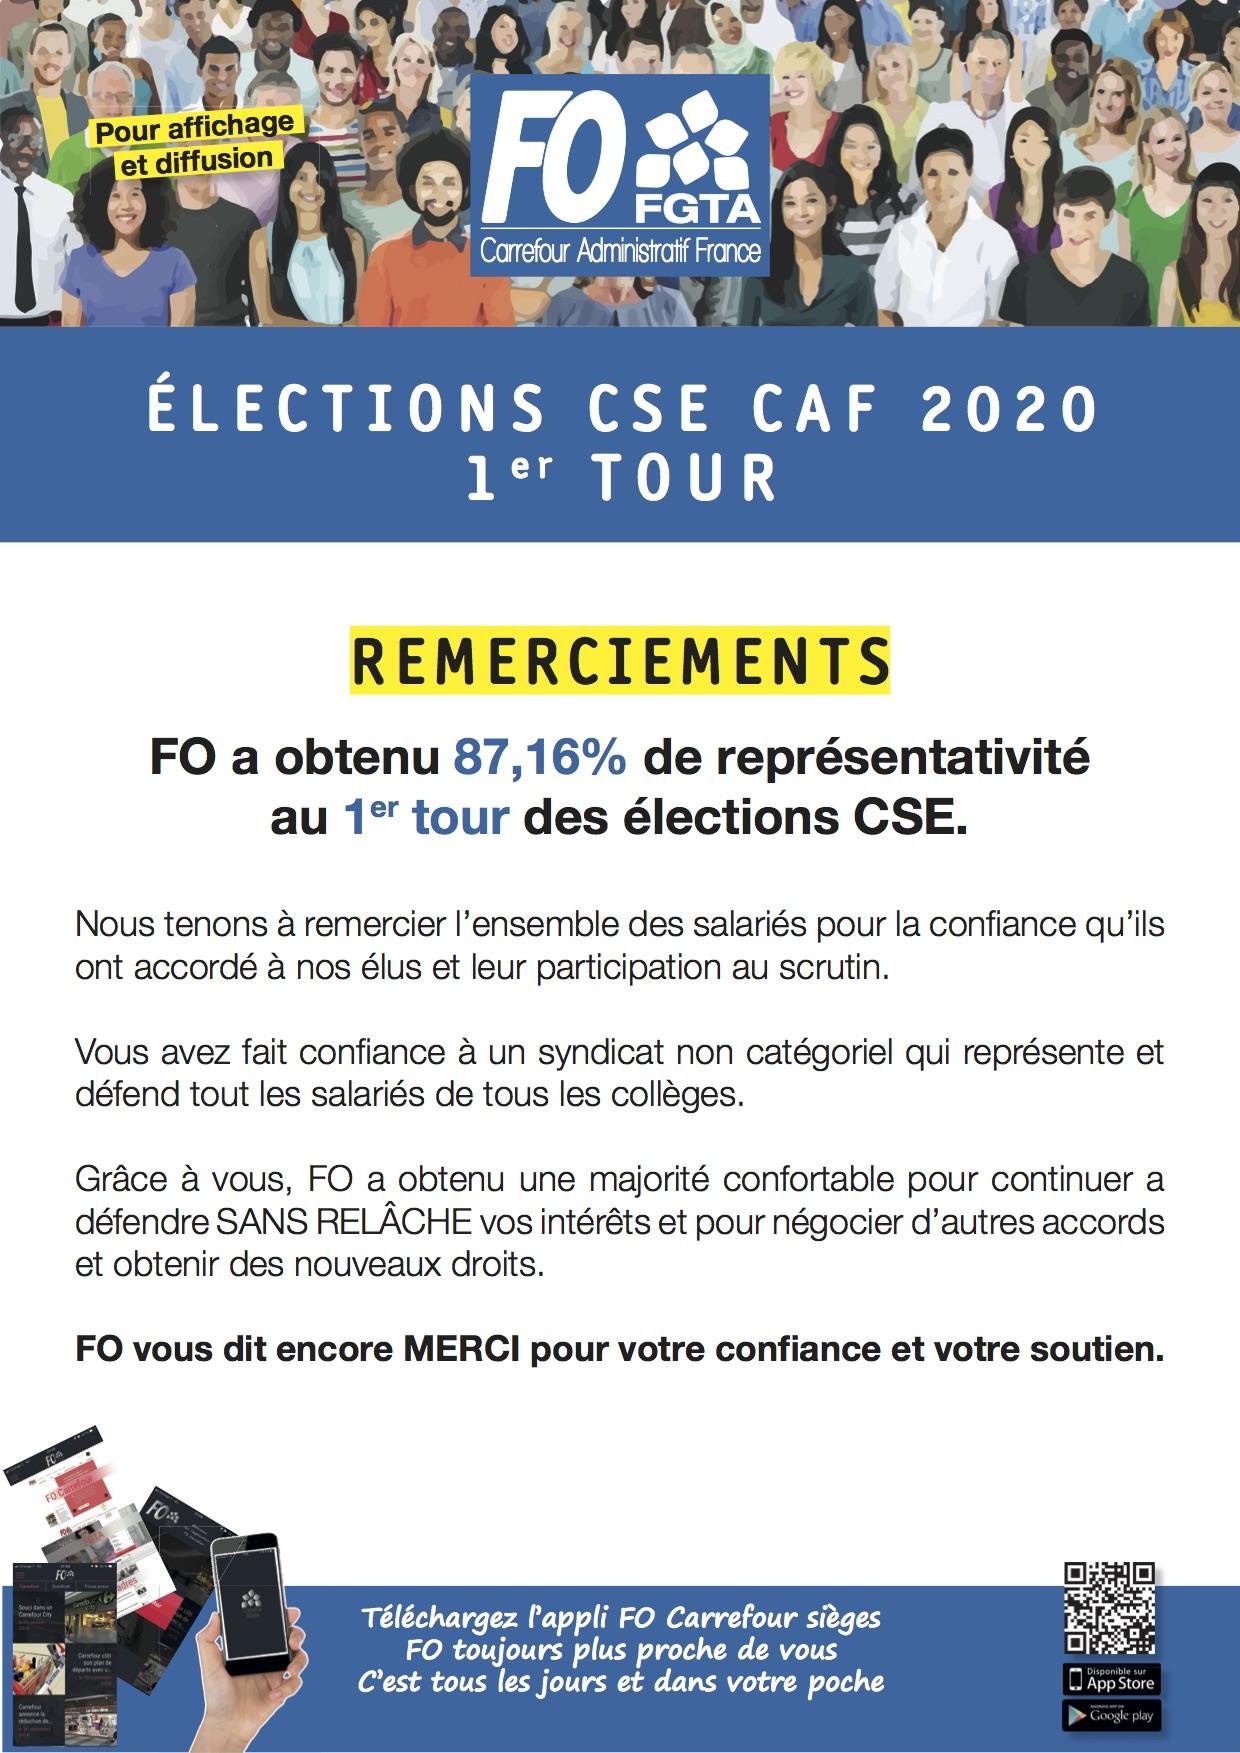 election cse 1er tour quorum